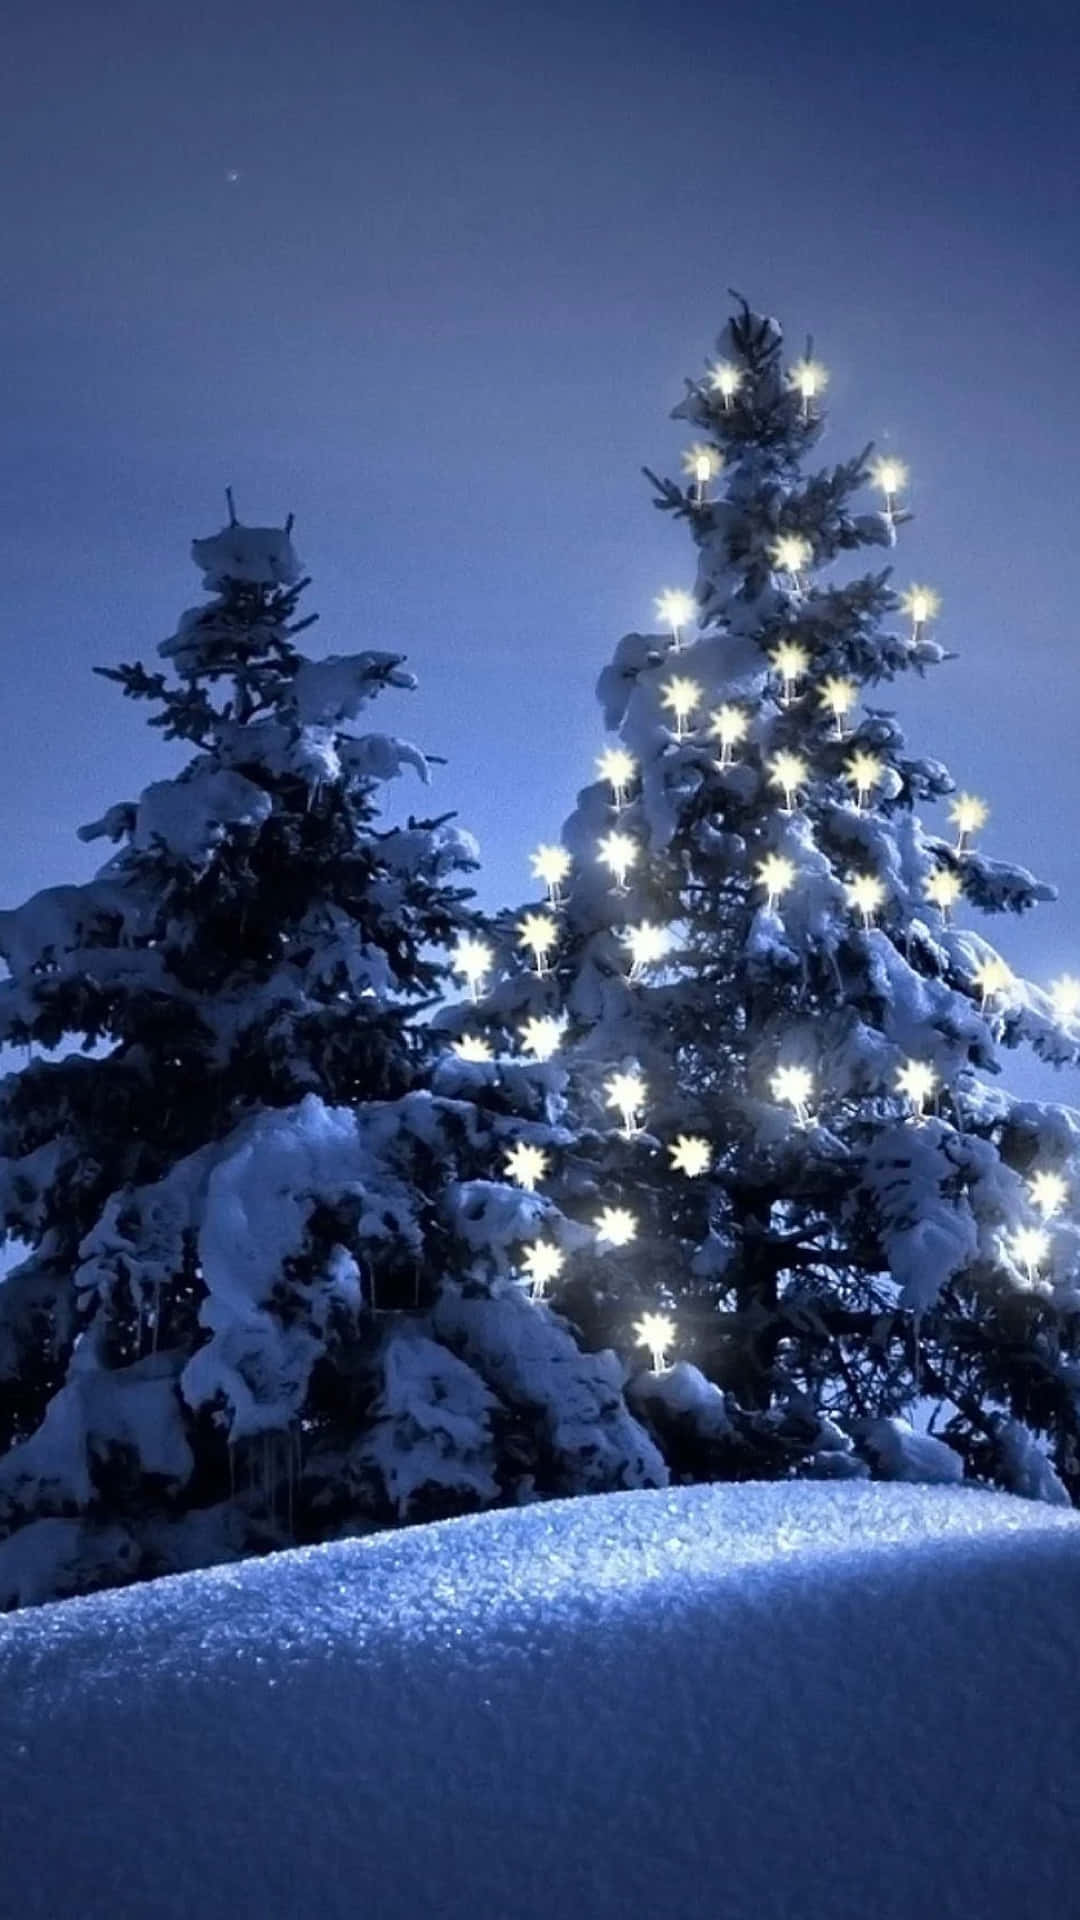 Fundode Retrato Com Árvores De Natal Na Neve.